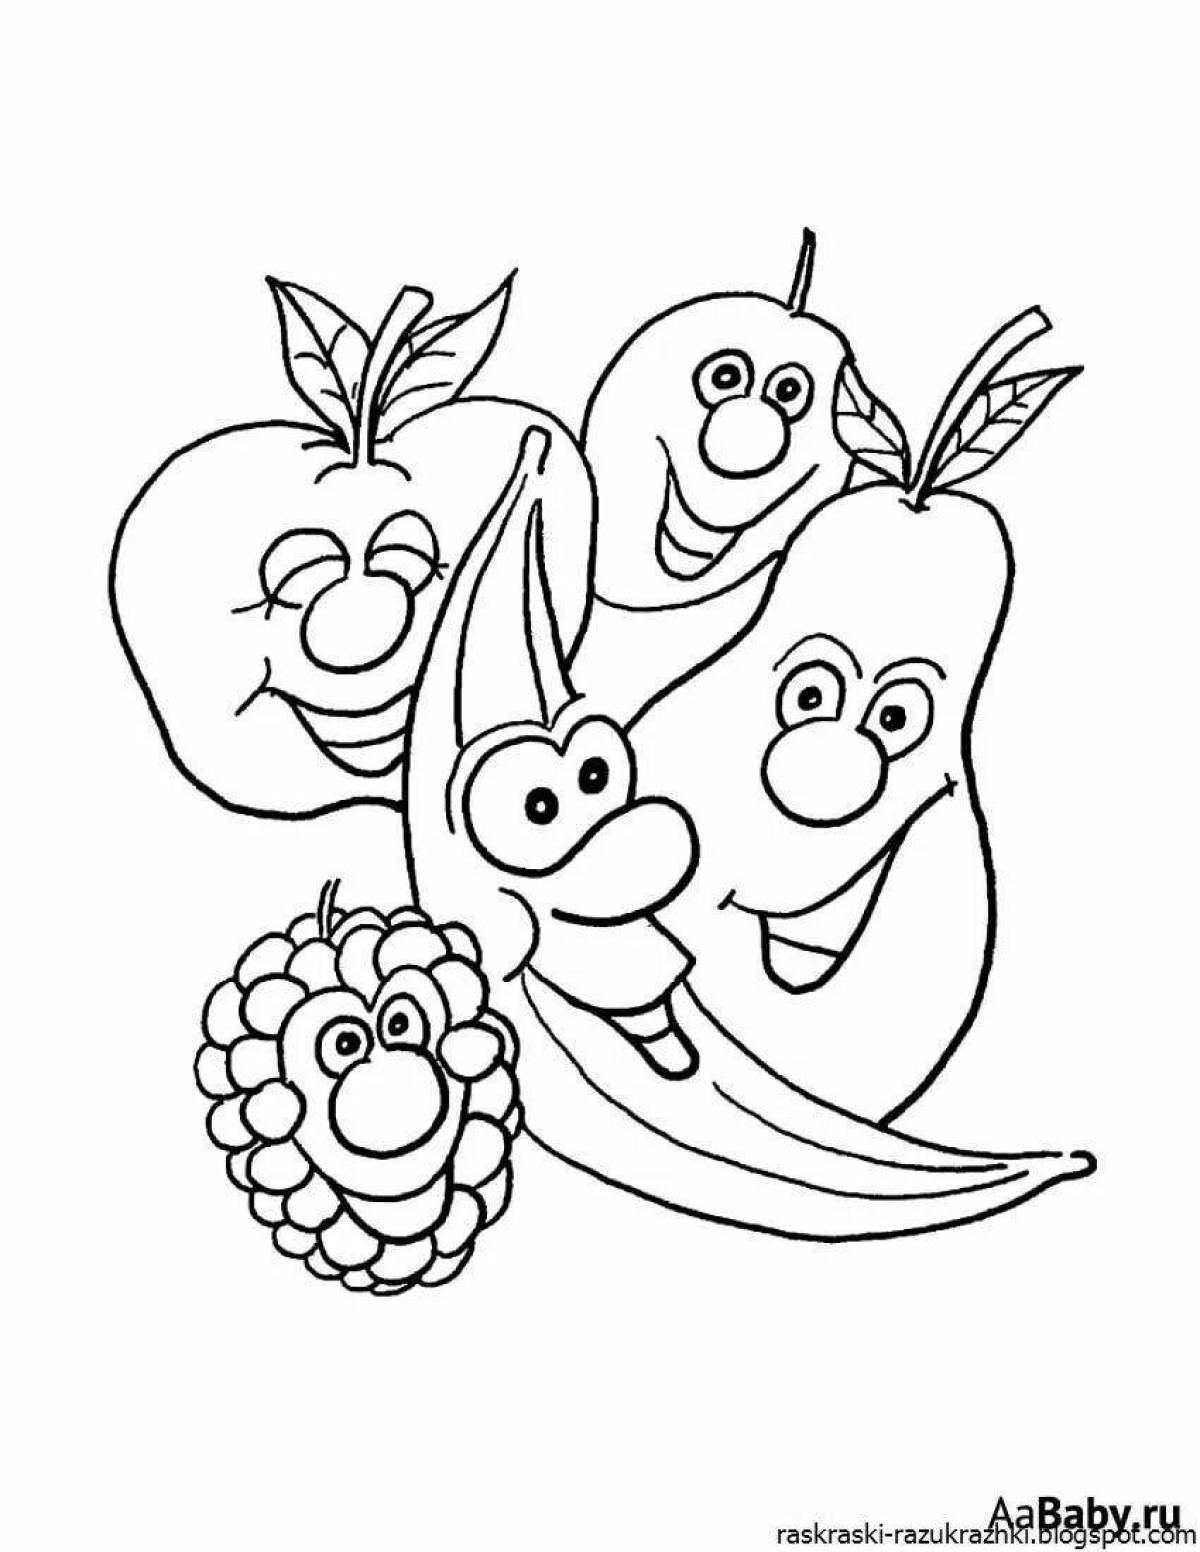 Развлекательная раскраска фруктов для детей 6-7 лет